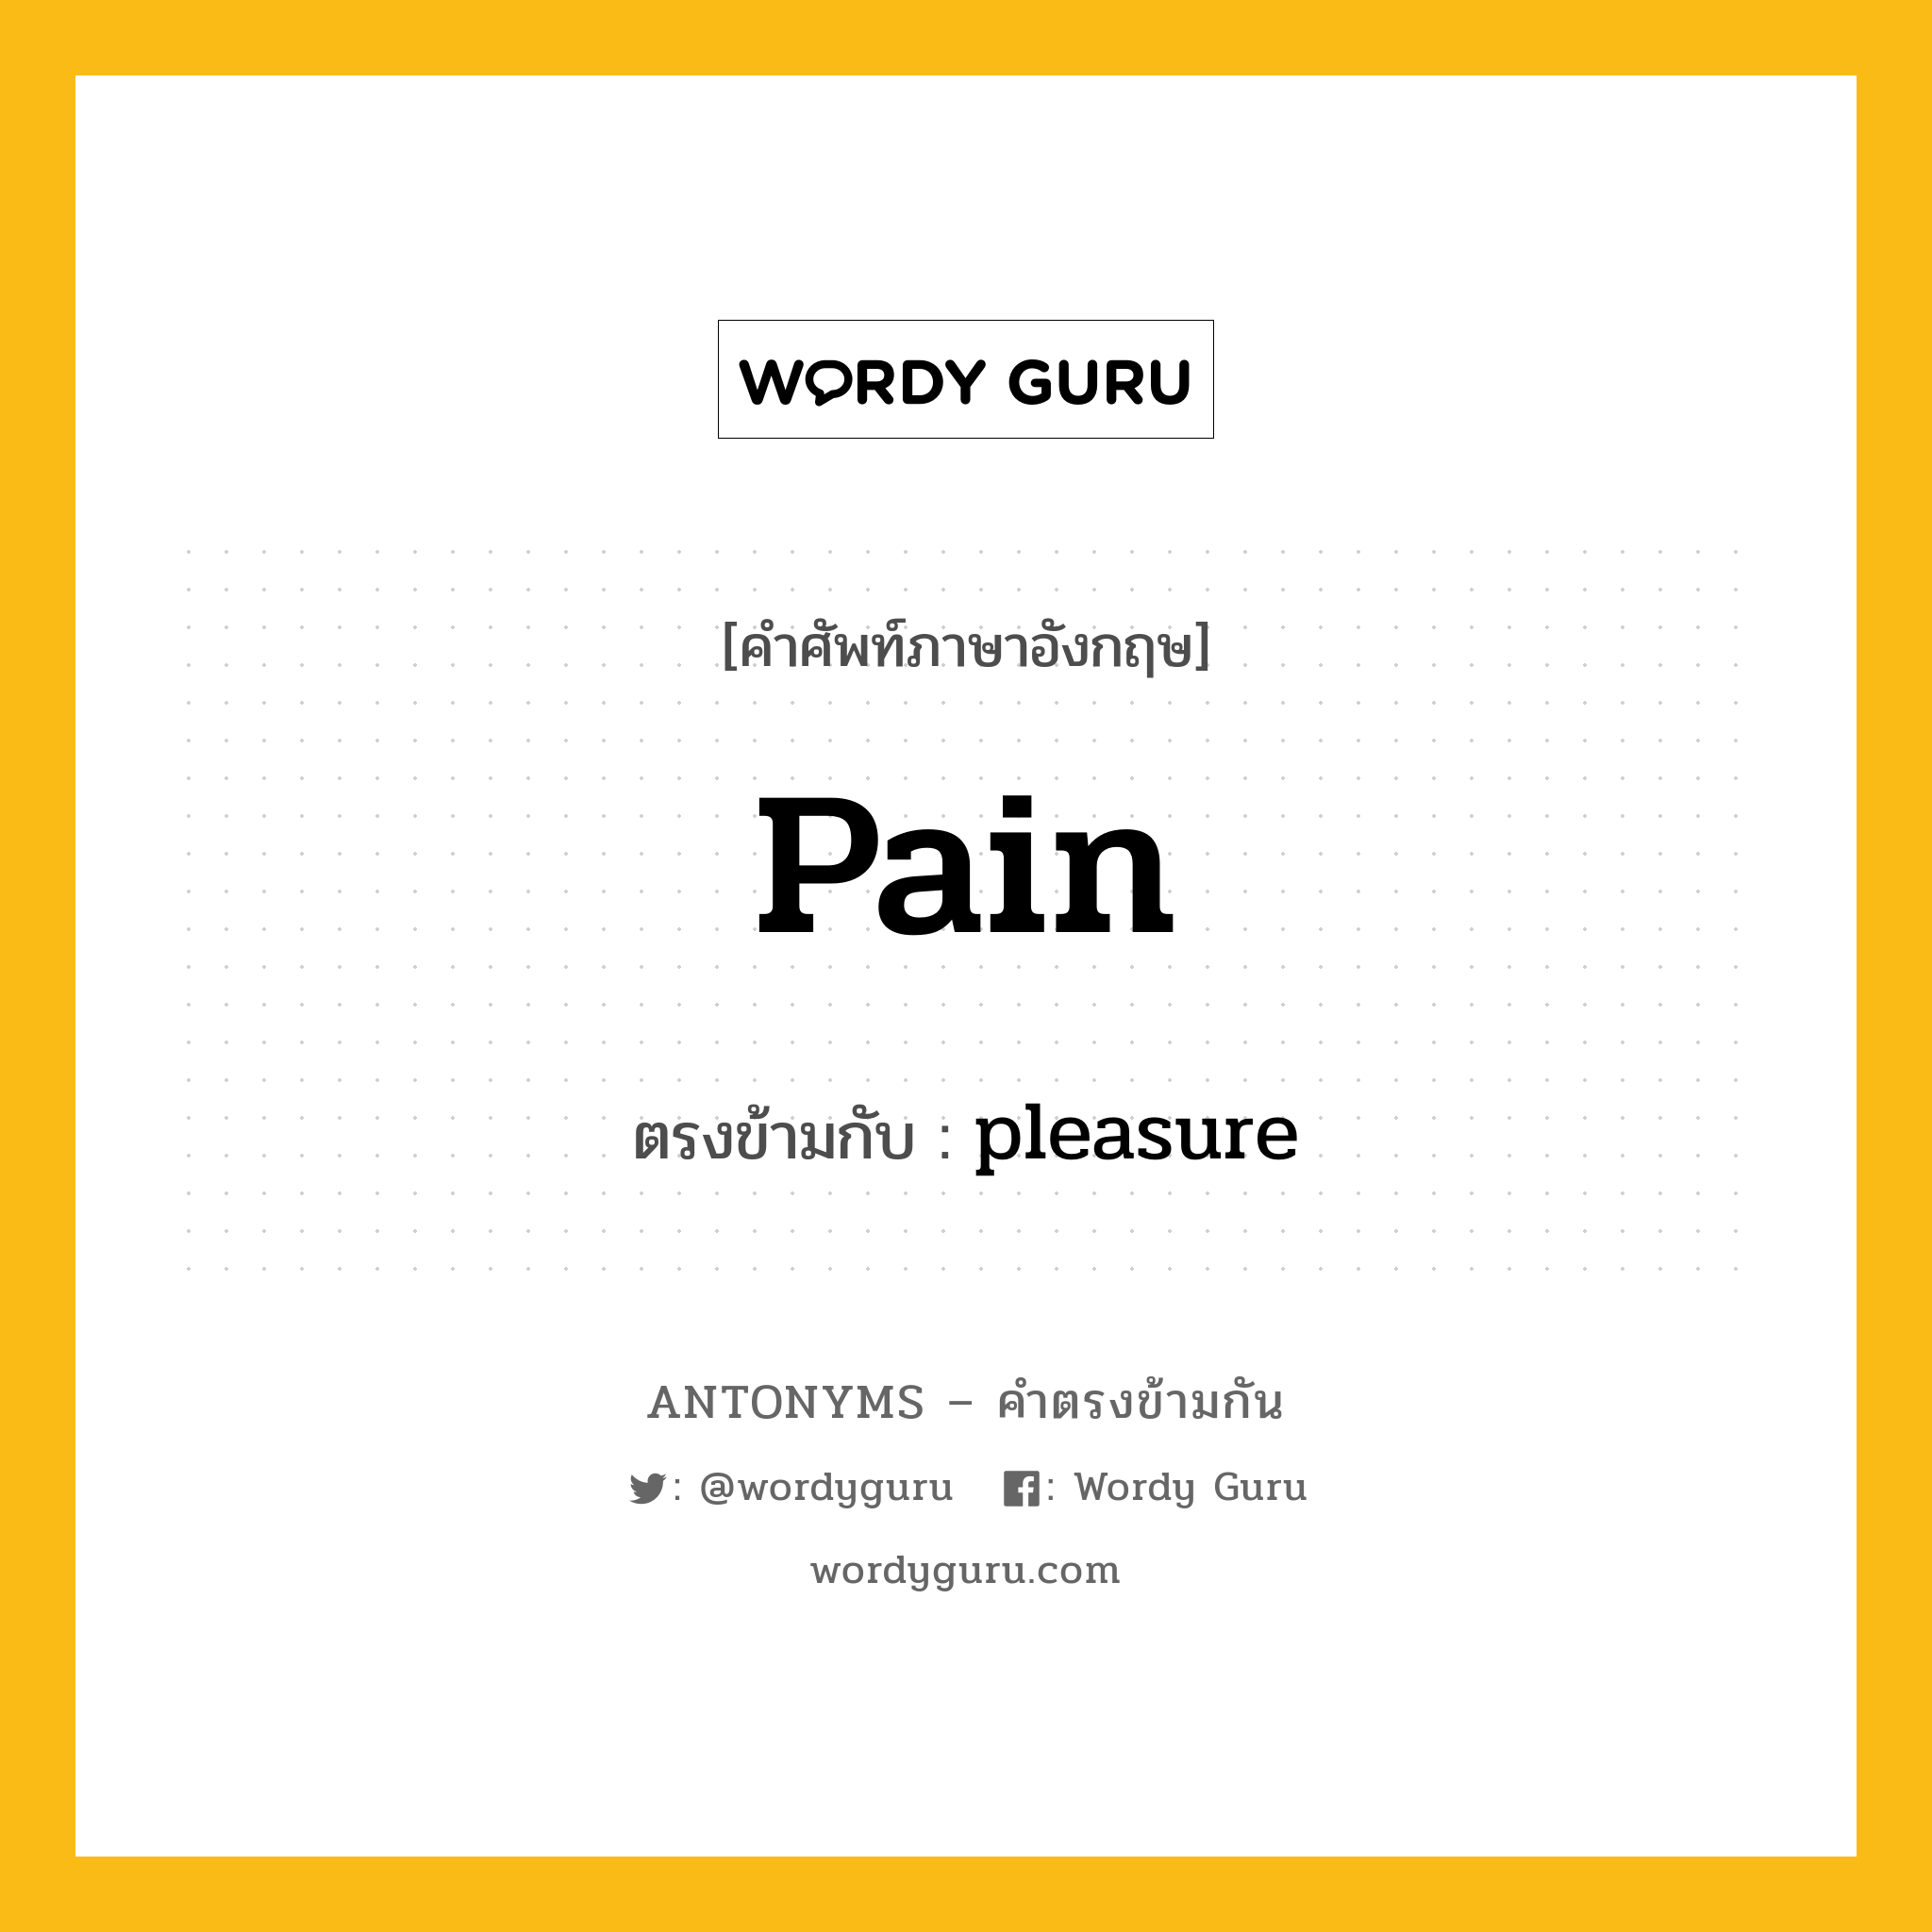 pain เป็นคำตรงข้ามกับคำไหนบ้าง?, คำศัพท์ภาษาอังกฤษ pain ตรงข้ามกับ pleasure หมวด pleasure